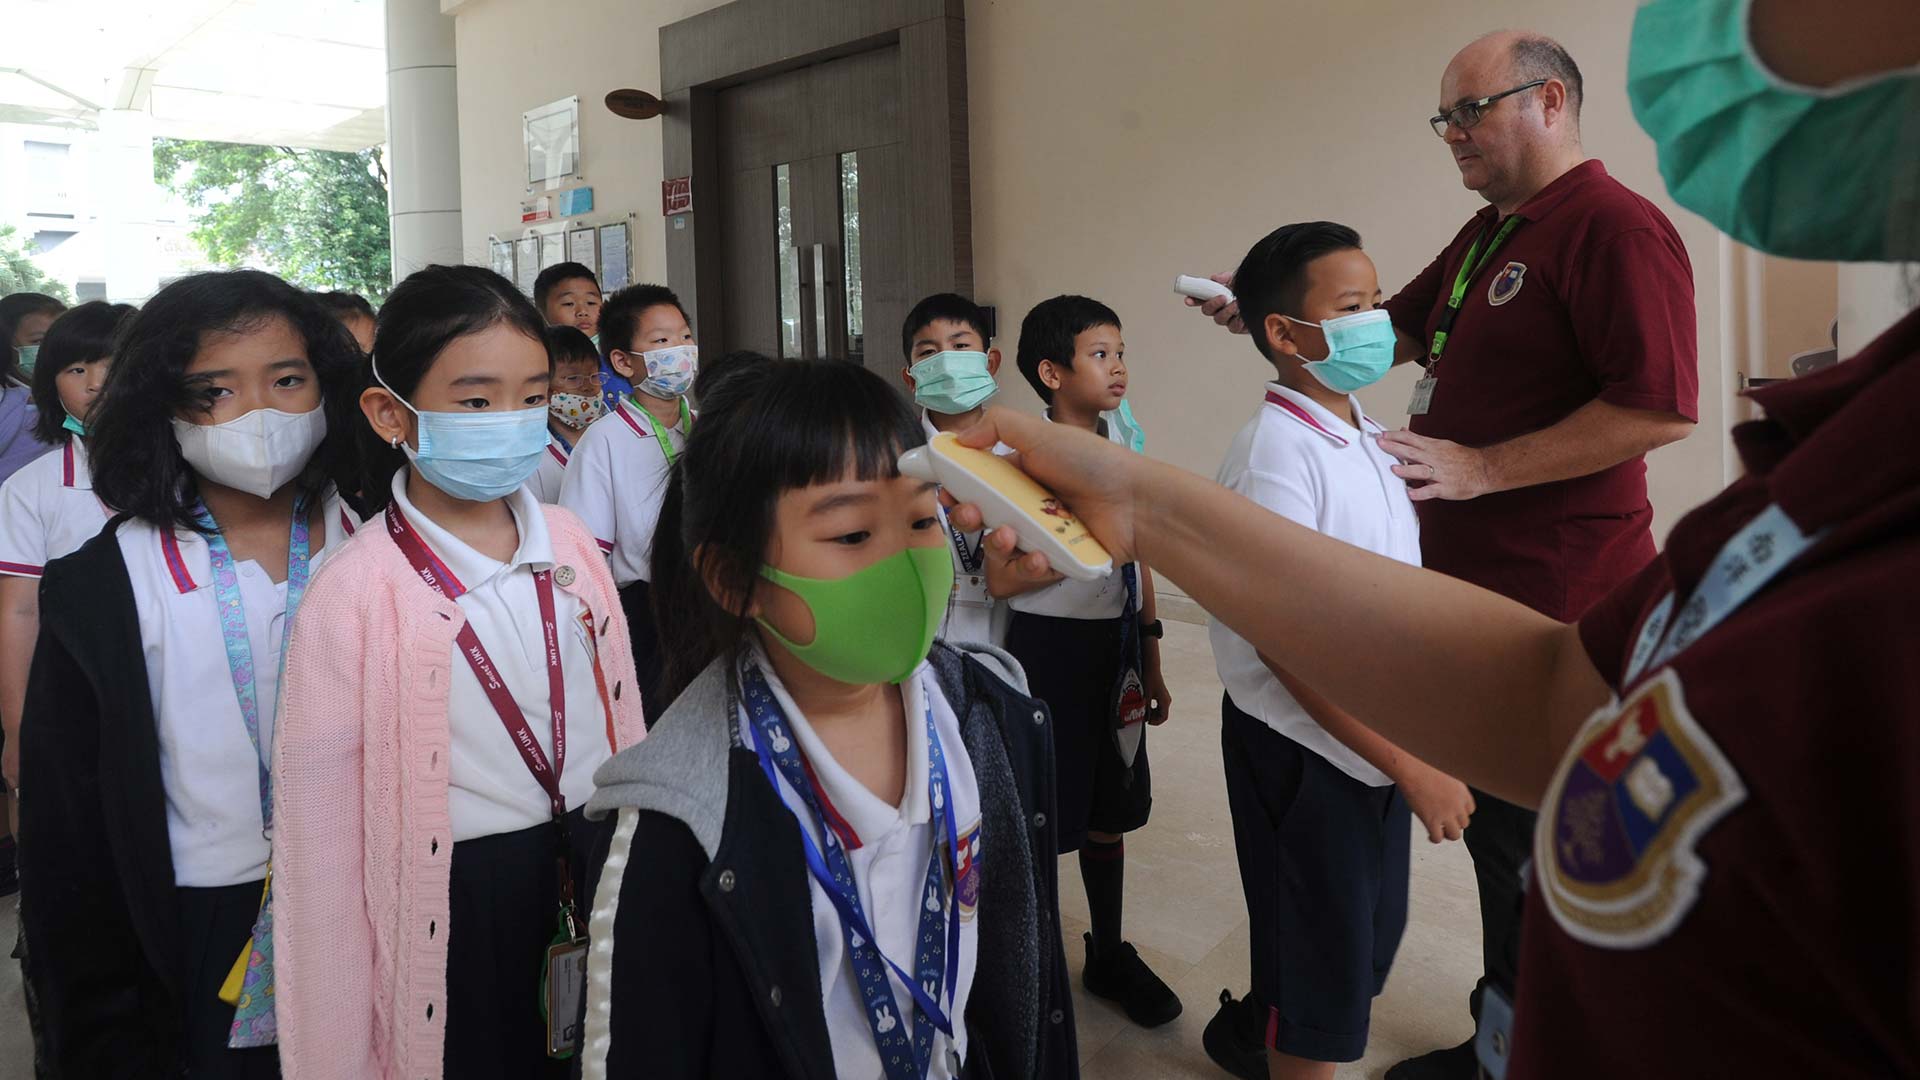 El coronavirus disminuye en China, pero el mundo entra en "territorio desconocido"